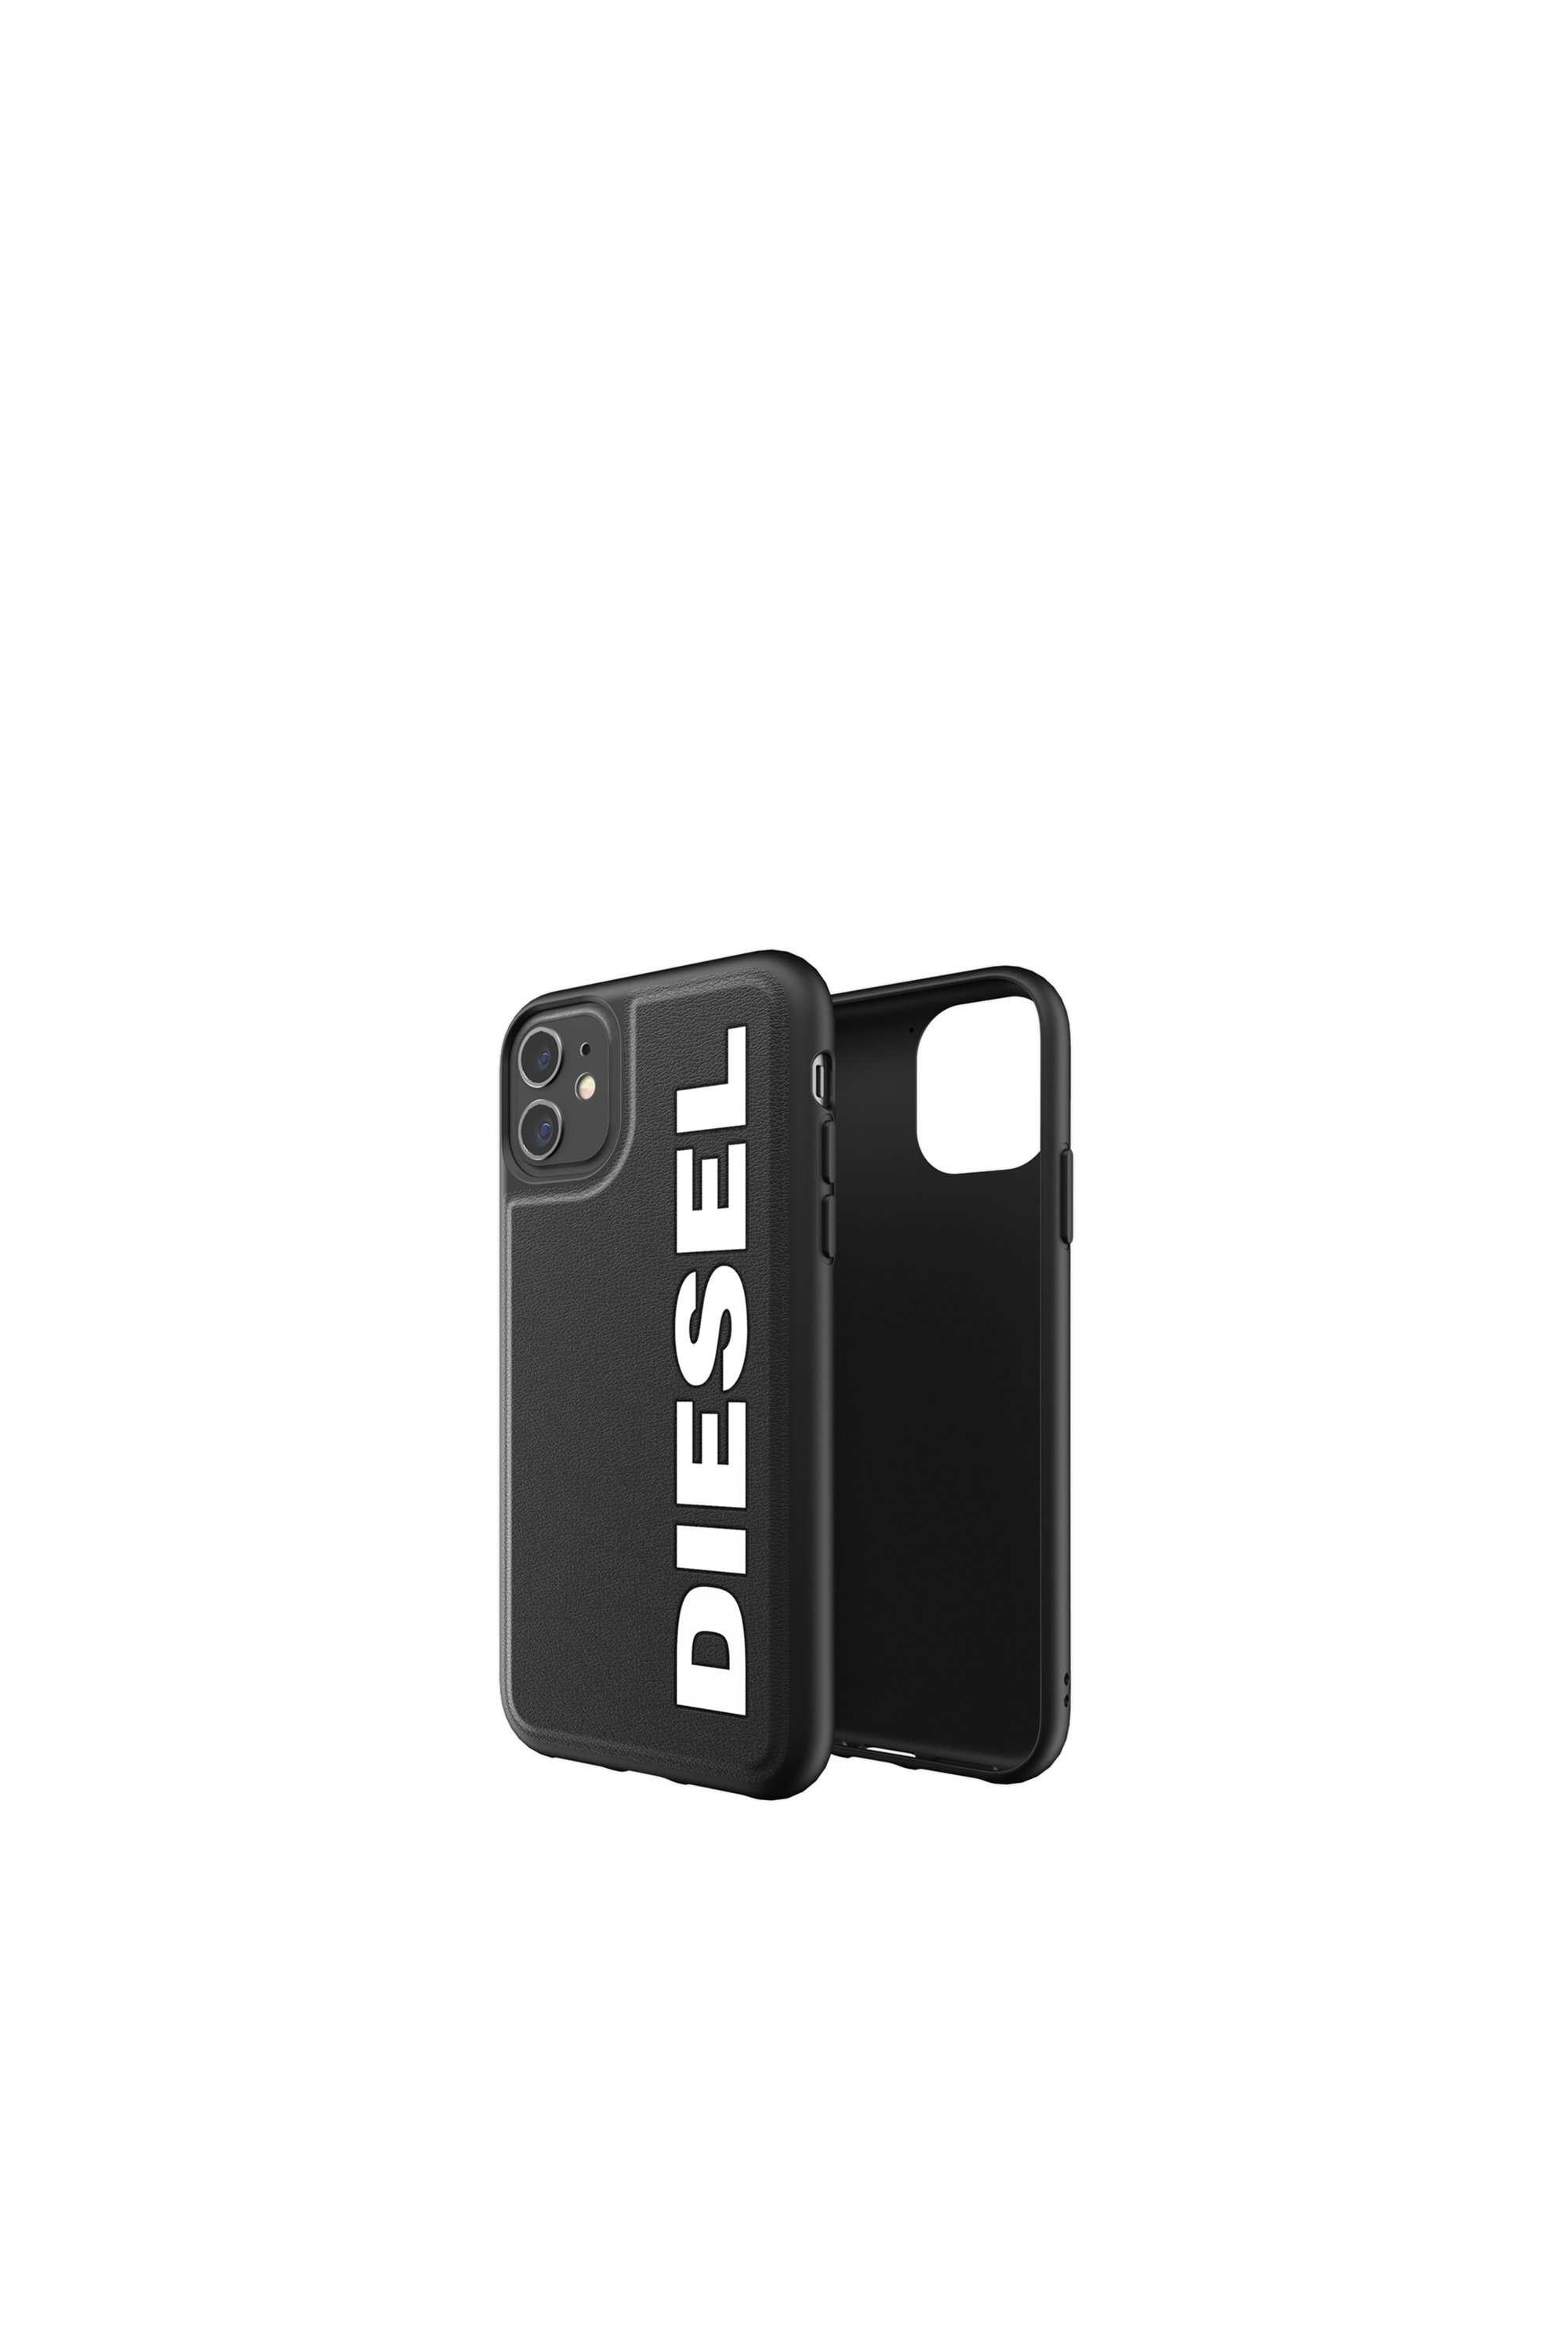 Diesel - 41981, Black - Image 1